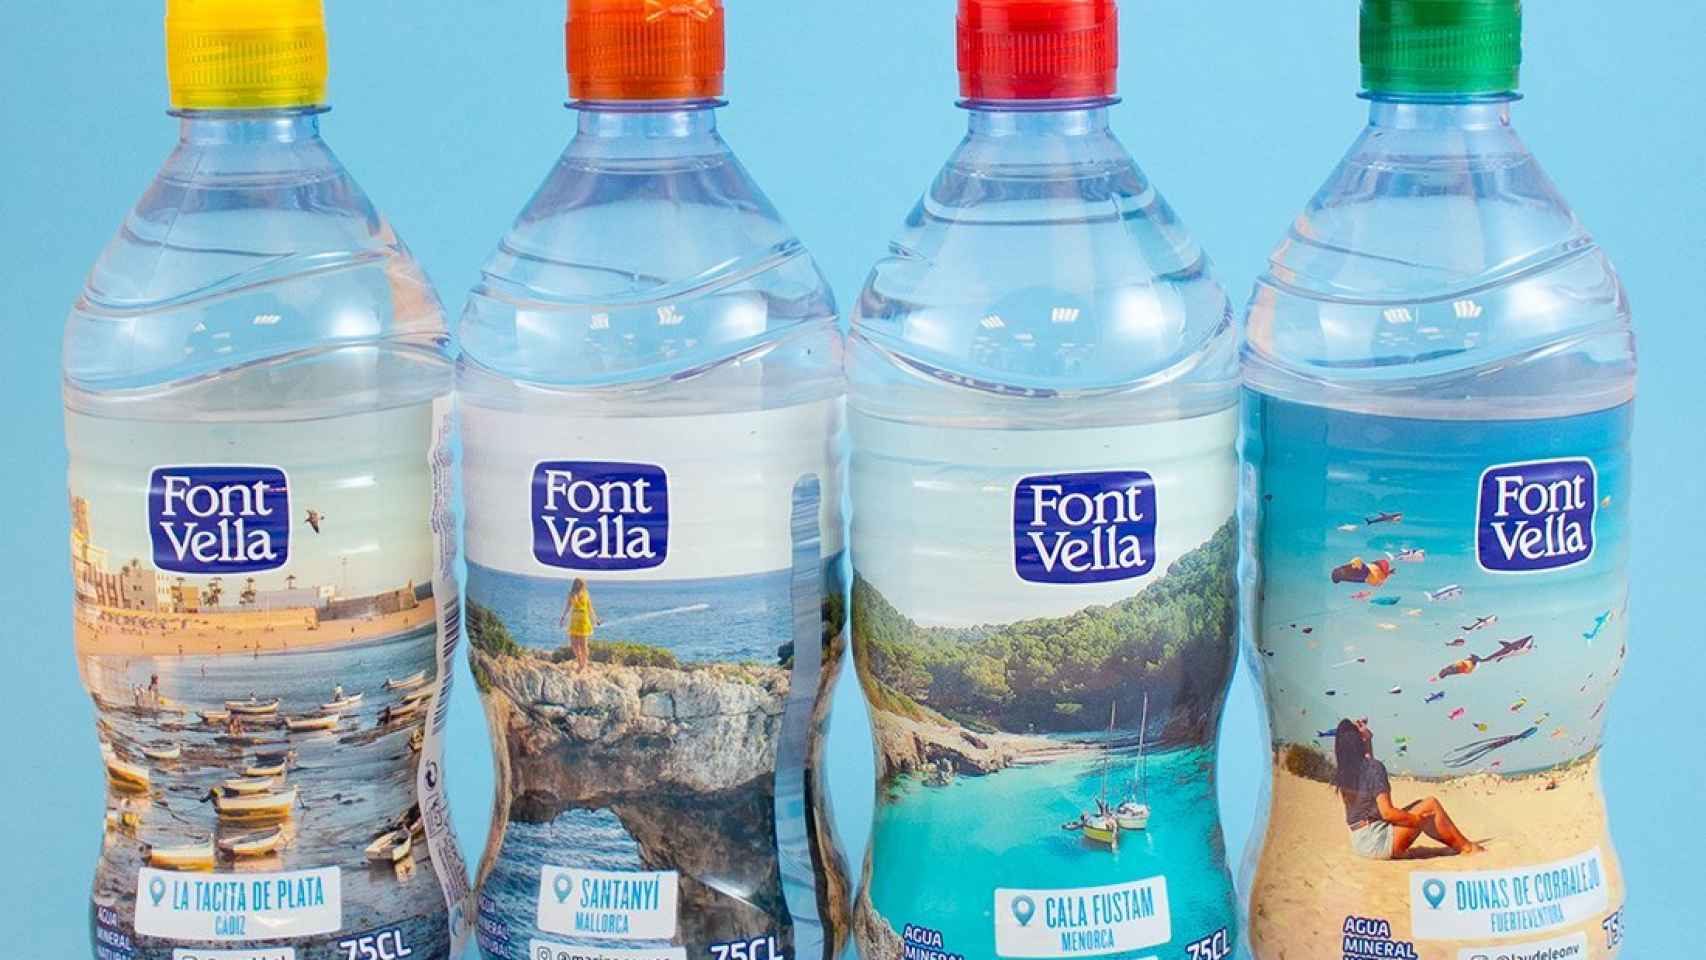 Imagen de varias botellas de Font Vella.